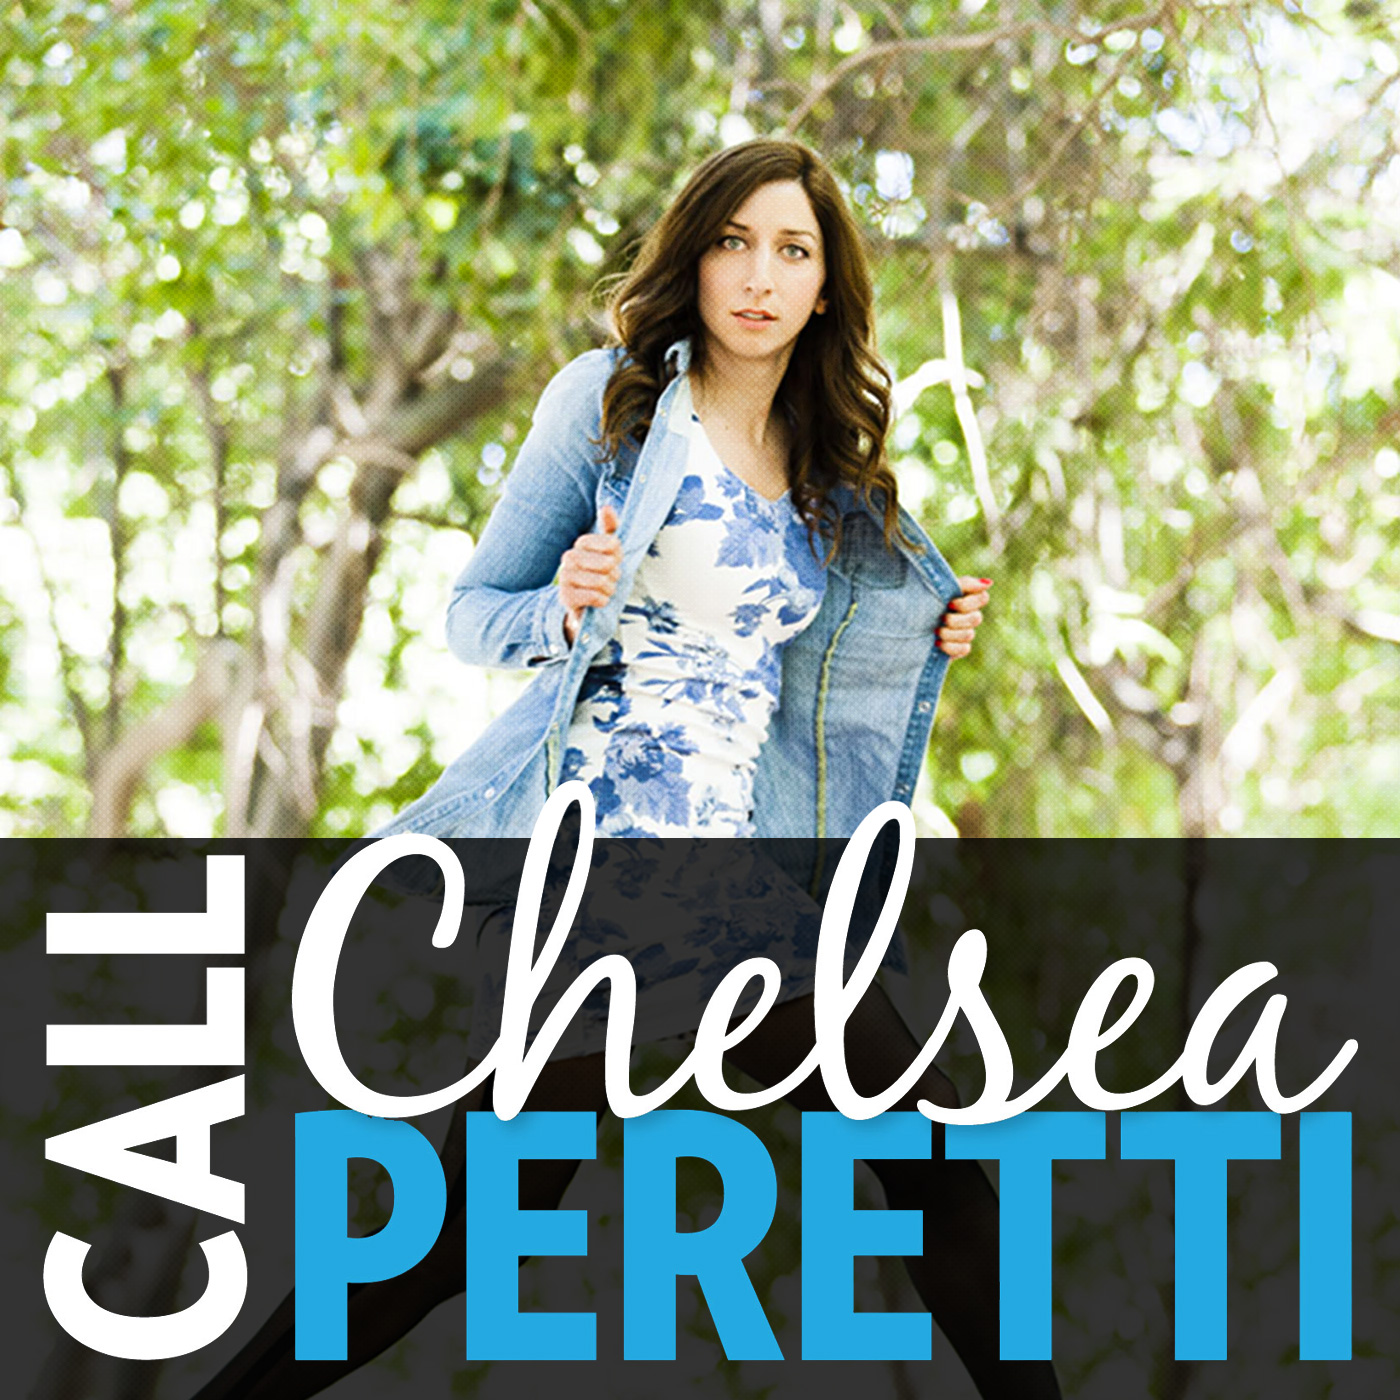 Call Chelsea Peretti Podcast Cover - Square